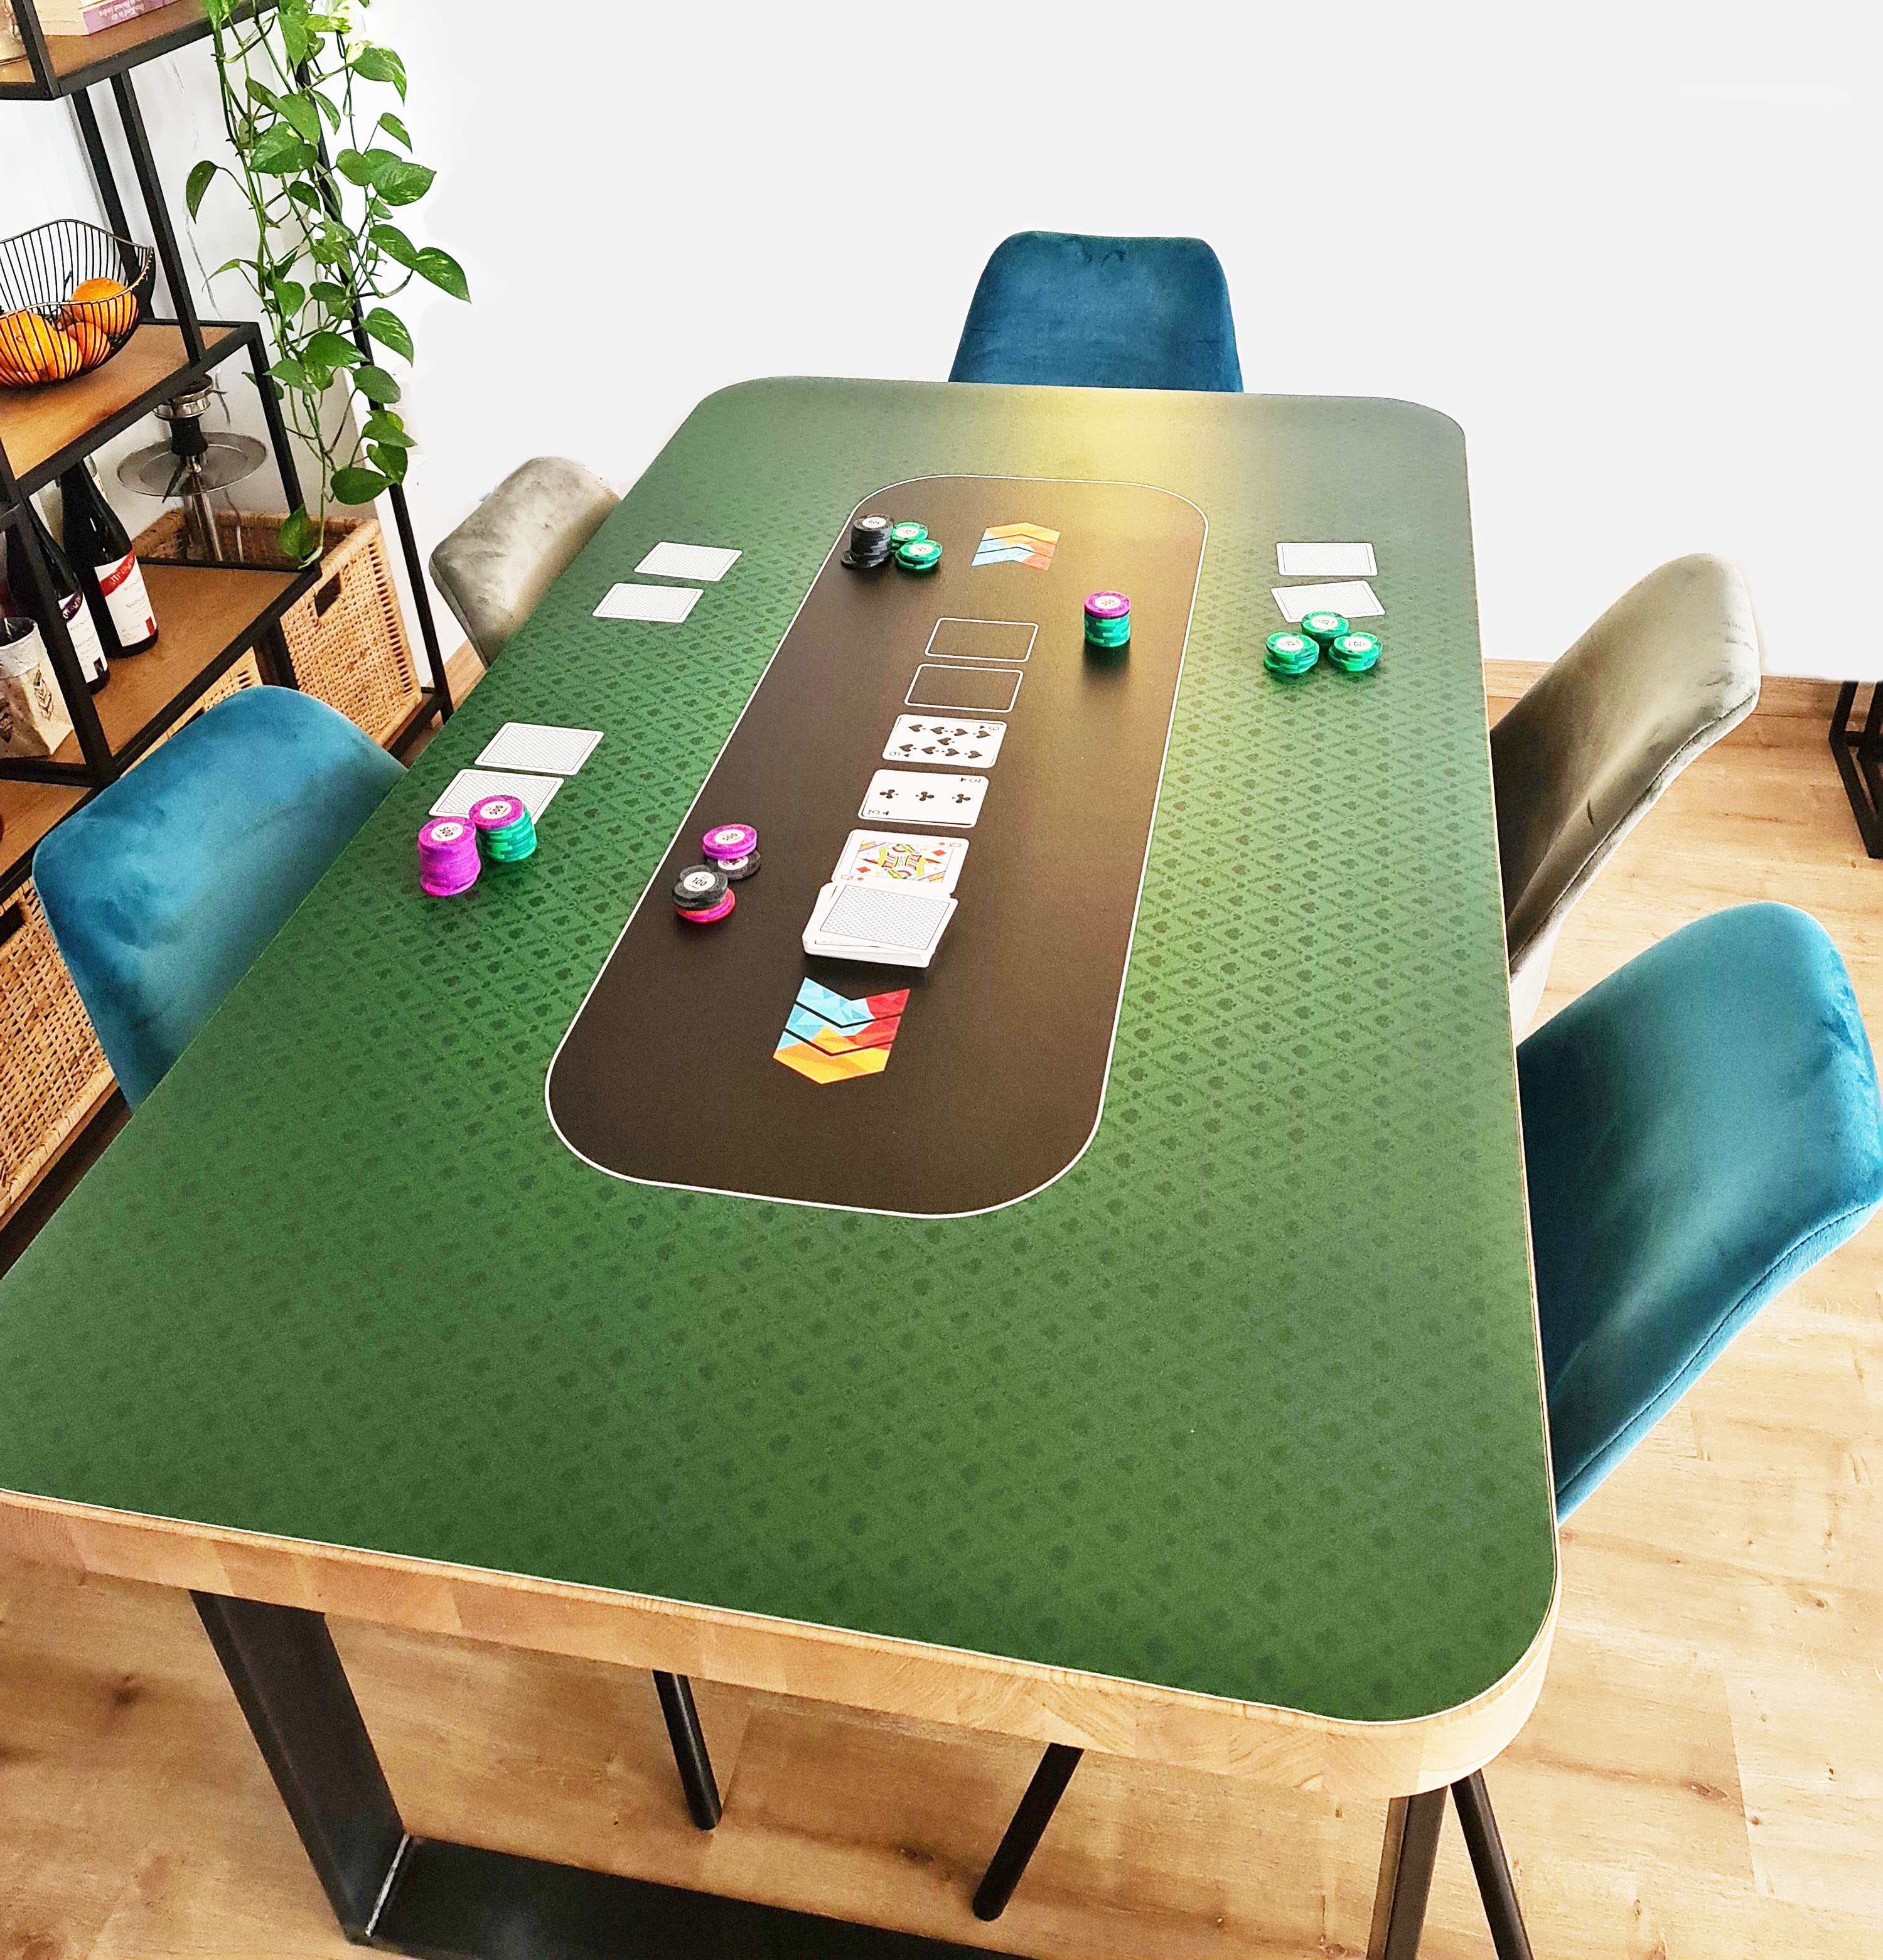 Pokertischauflage (glattes Material)